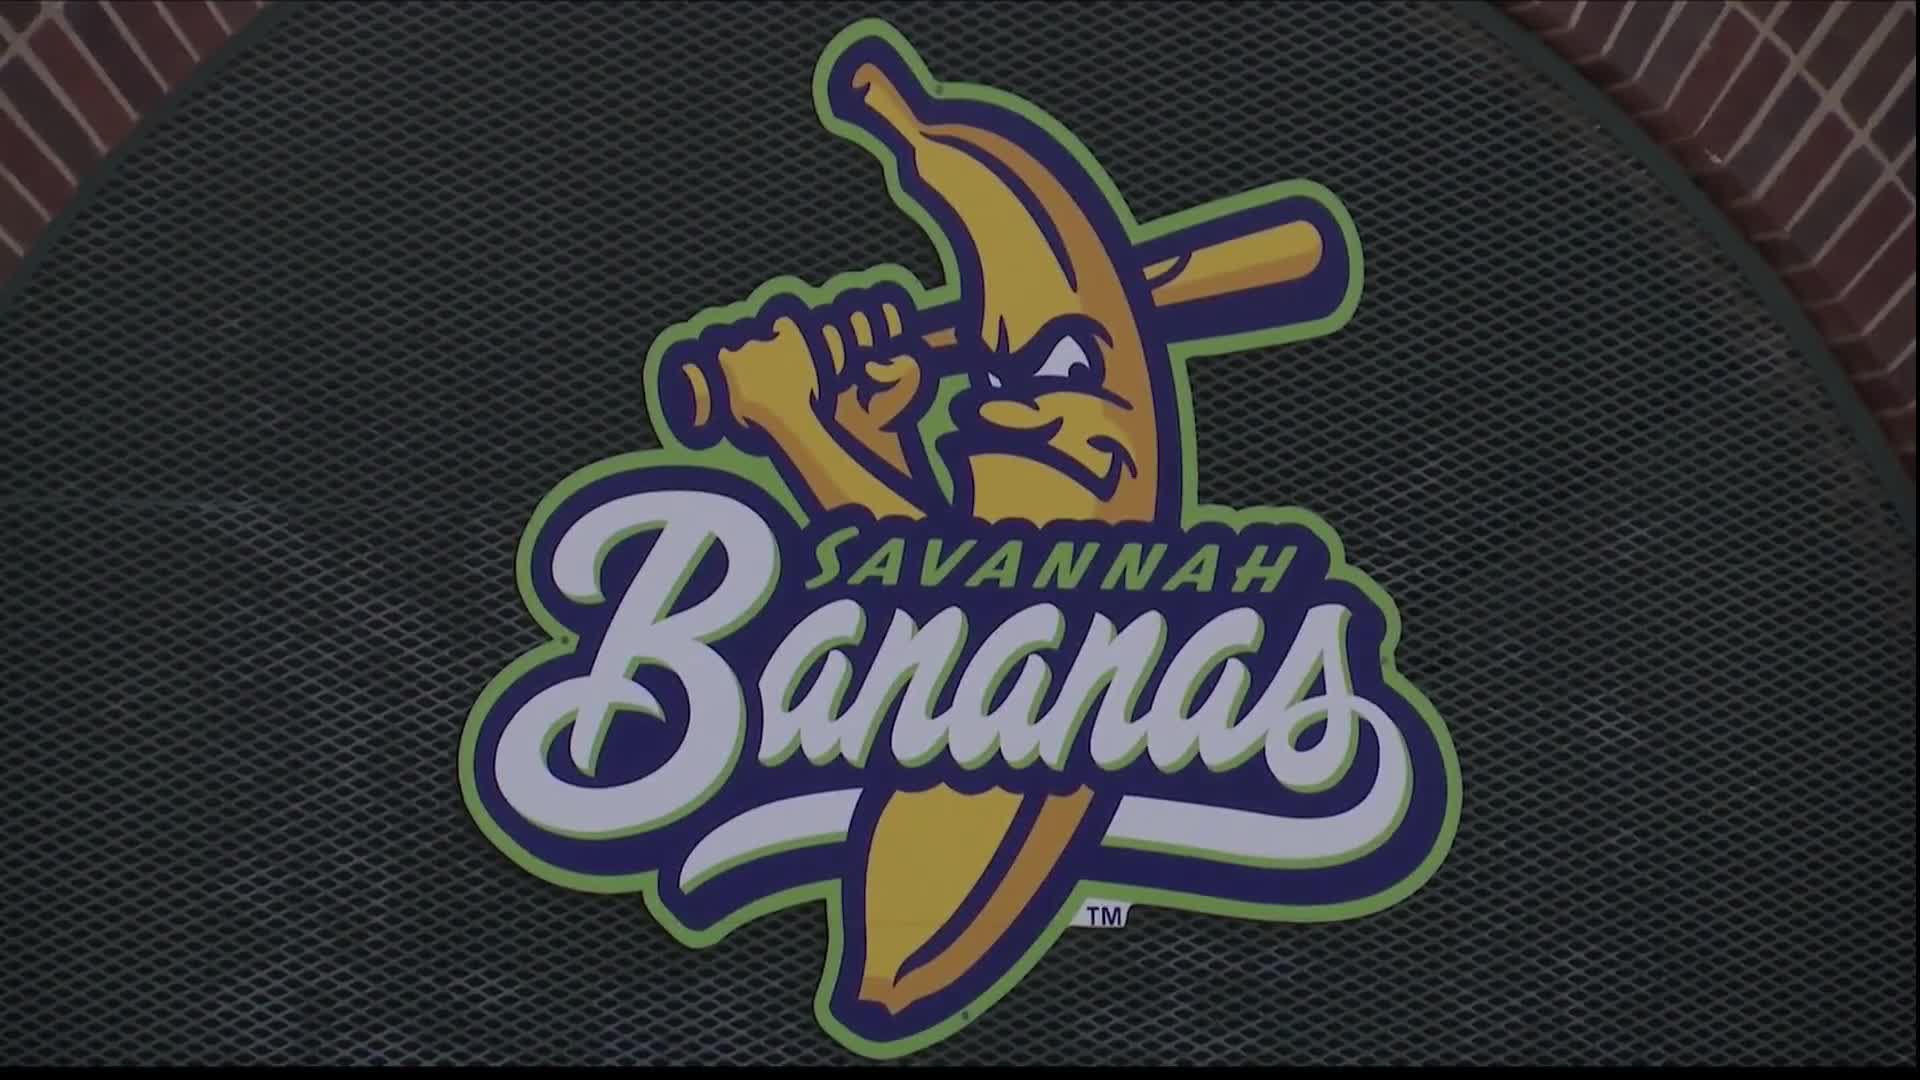 Looking for Savannah Bananas tickets